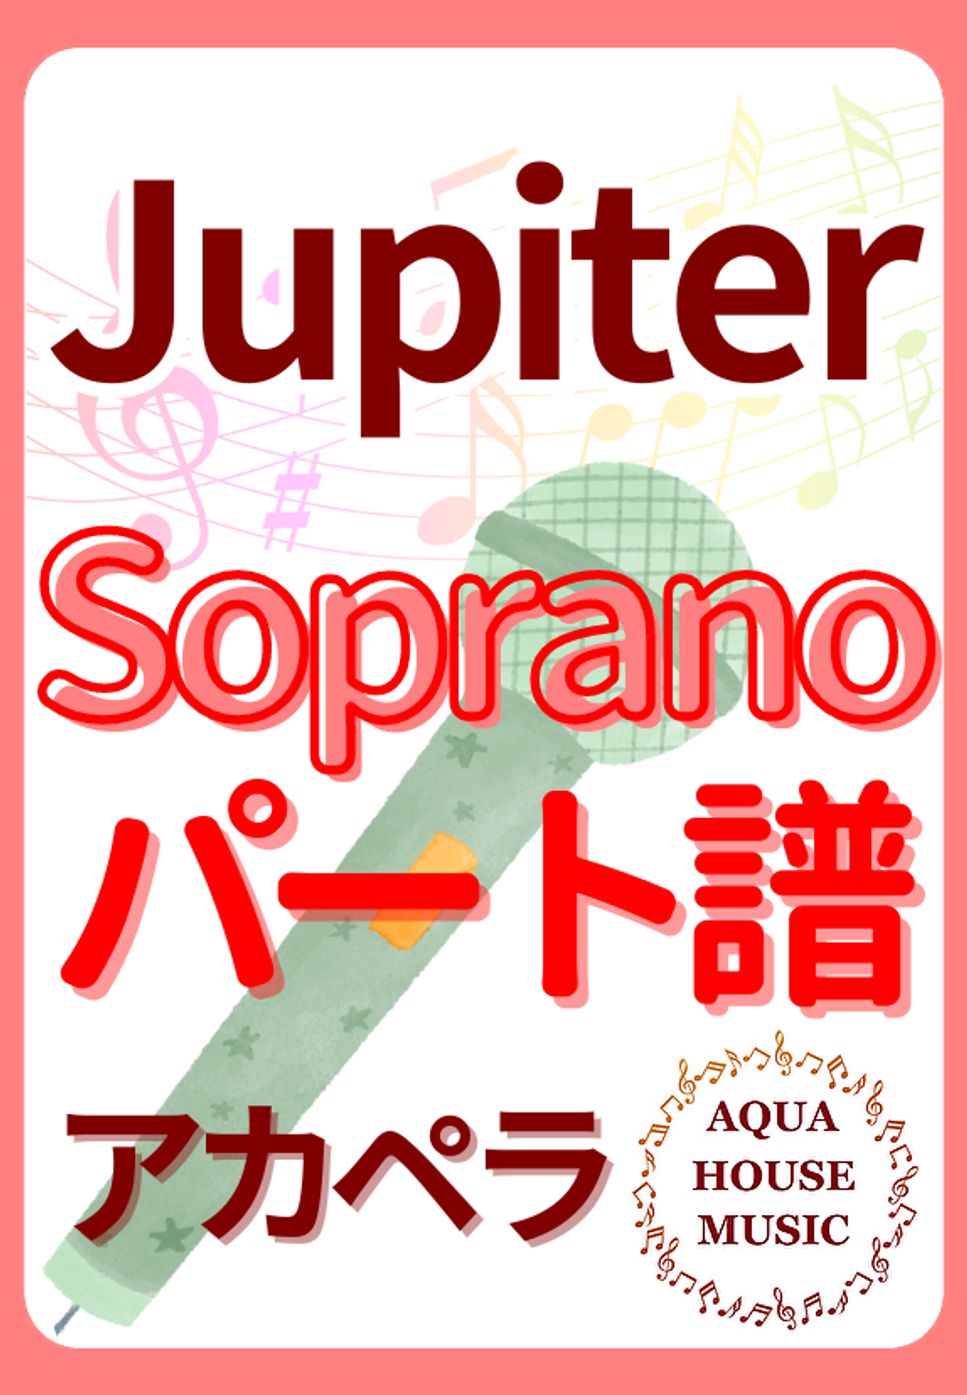 平原 綾香 - Jupiter (アカペラ楽譜♪Sopranoパート譜) by 飯田 亜紗子